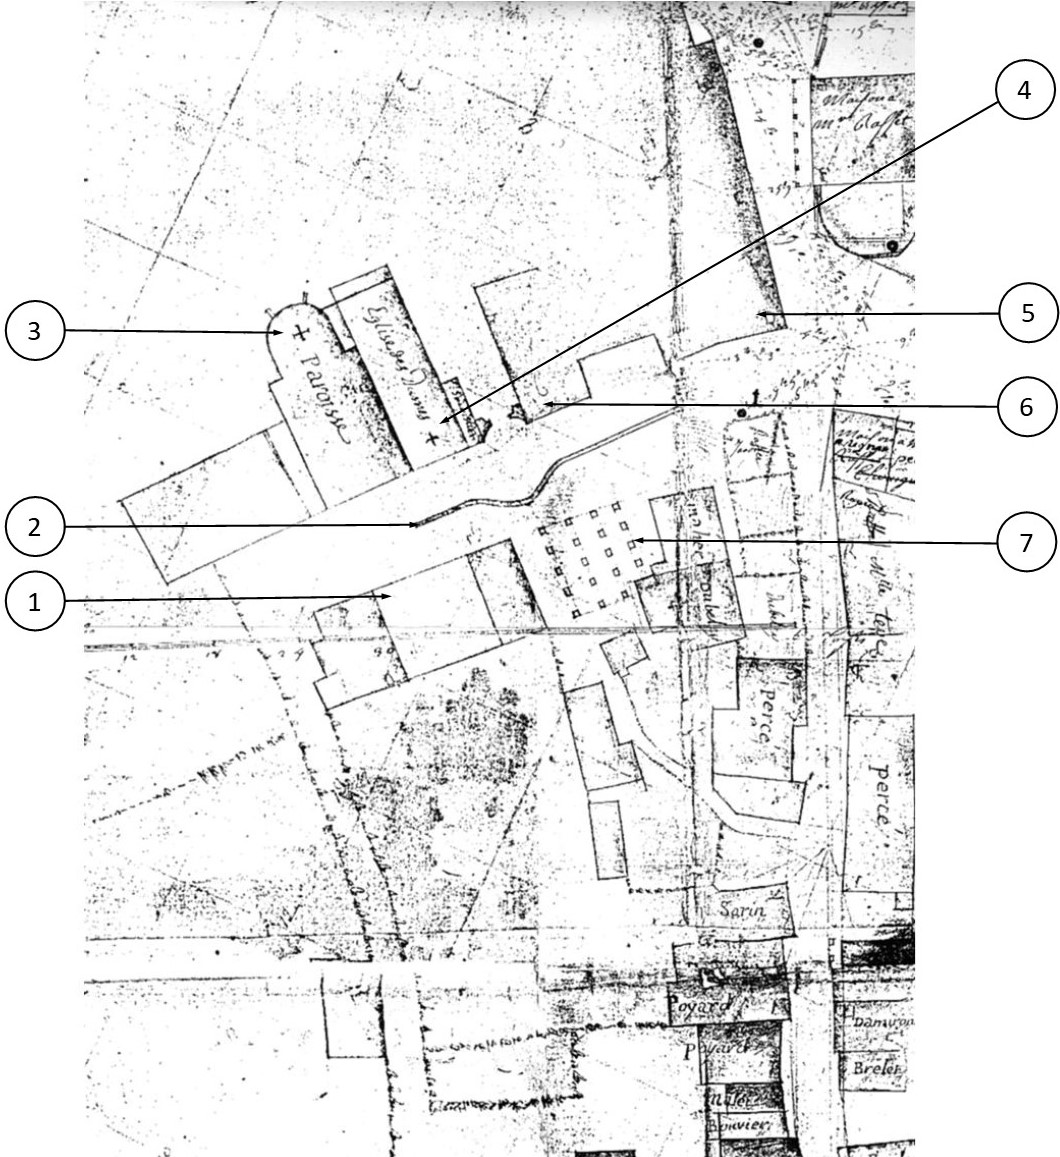 Plan datant de 1764 montrant les églises